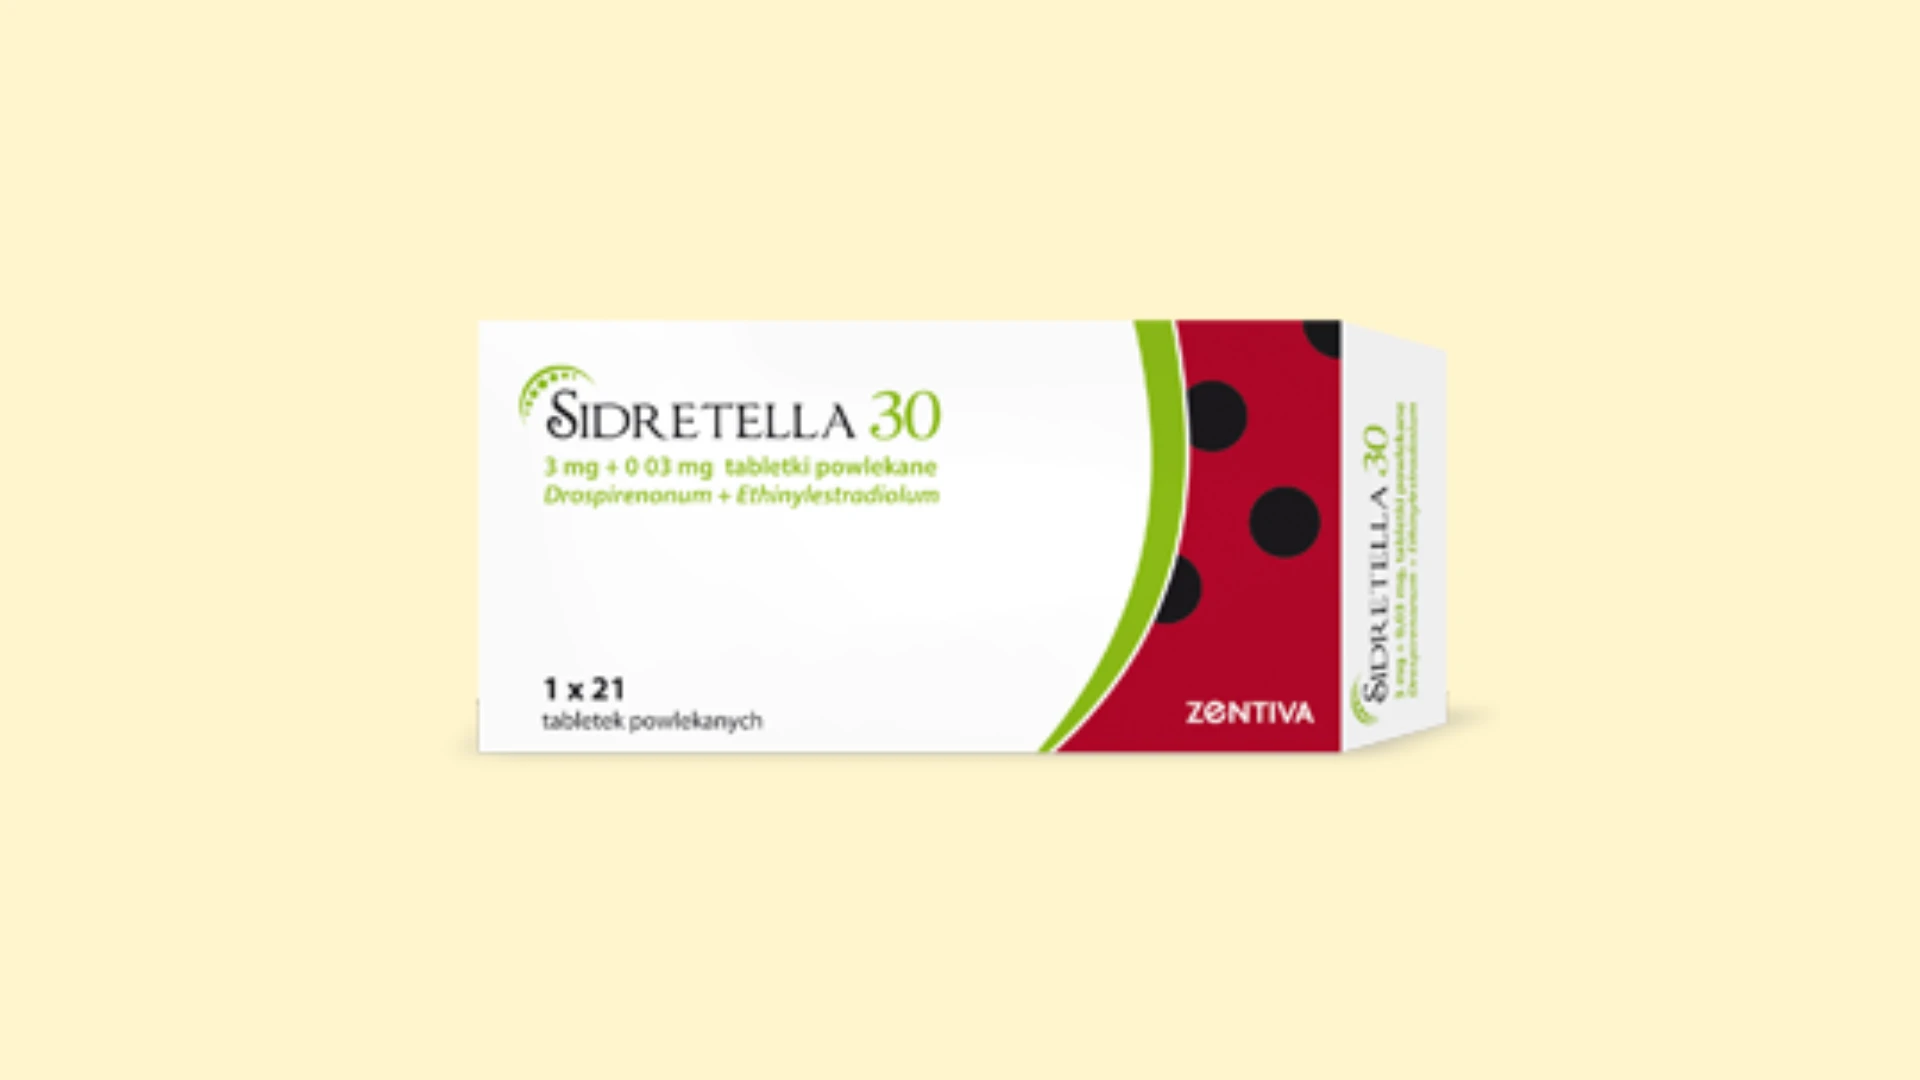 Sidretella 30 - Recepta online - e-Recepta z konsultacją | cena, dawkowanie, przeciwwskazania